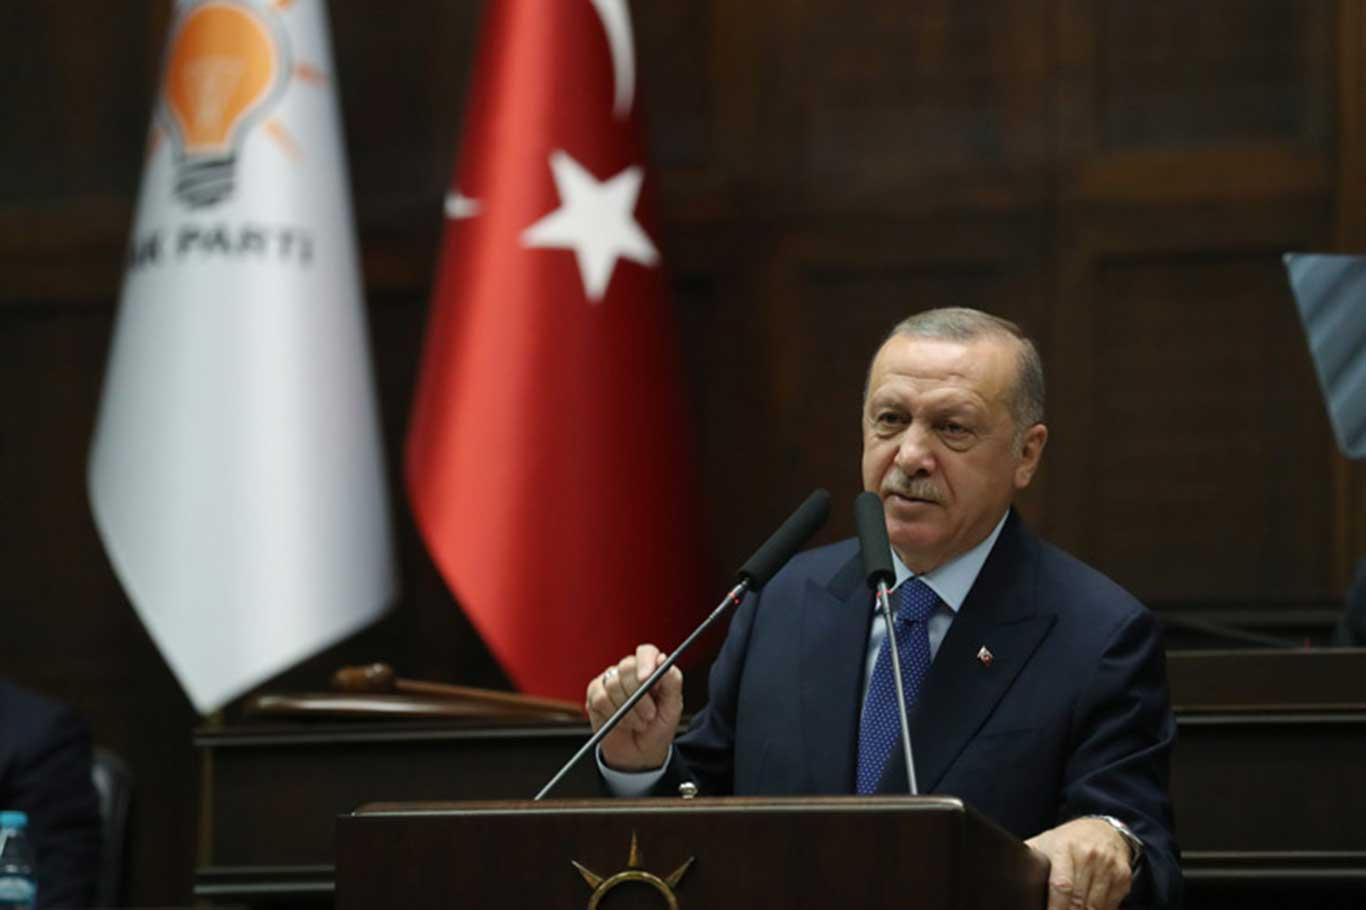 Erdoğan criticizes those who accuse Turkey of committing massacres